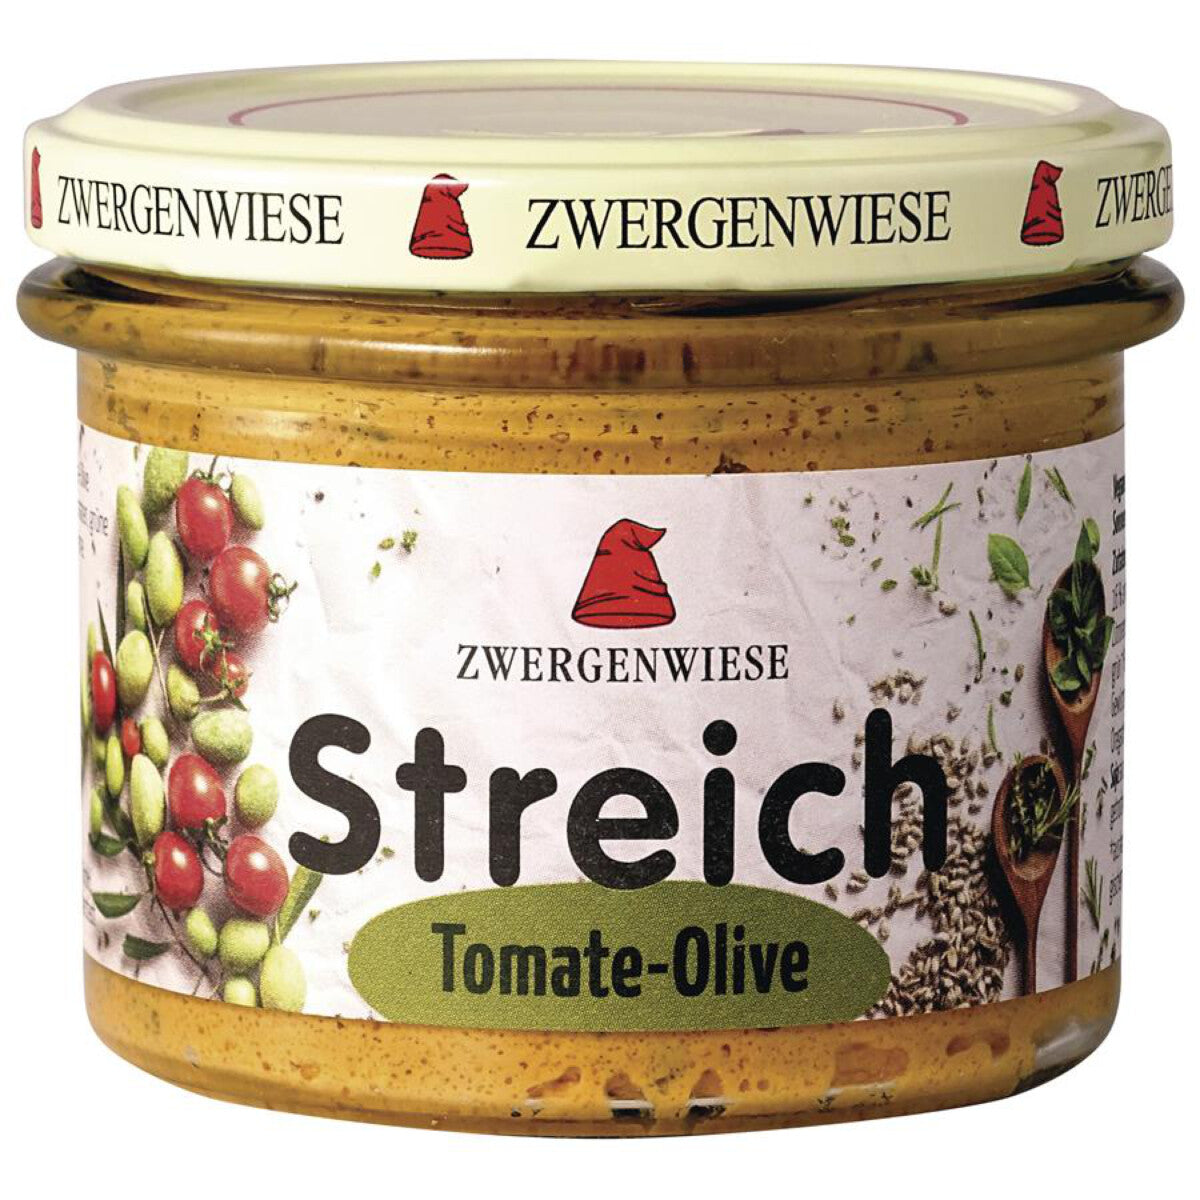 ZWERGENWIESE Tomate-Olive Streich - 180 g